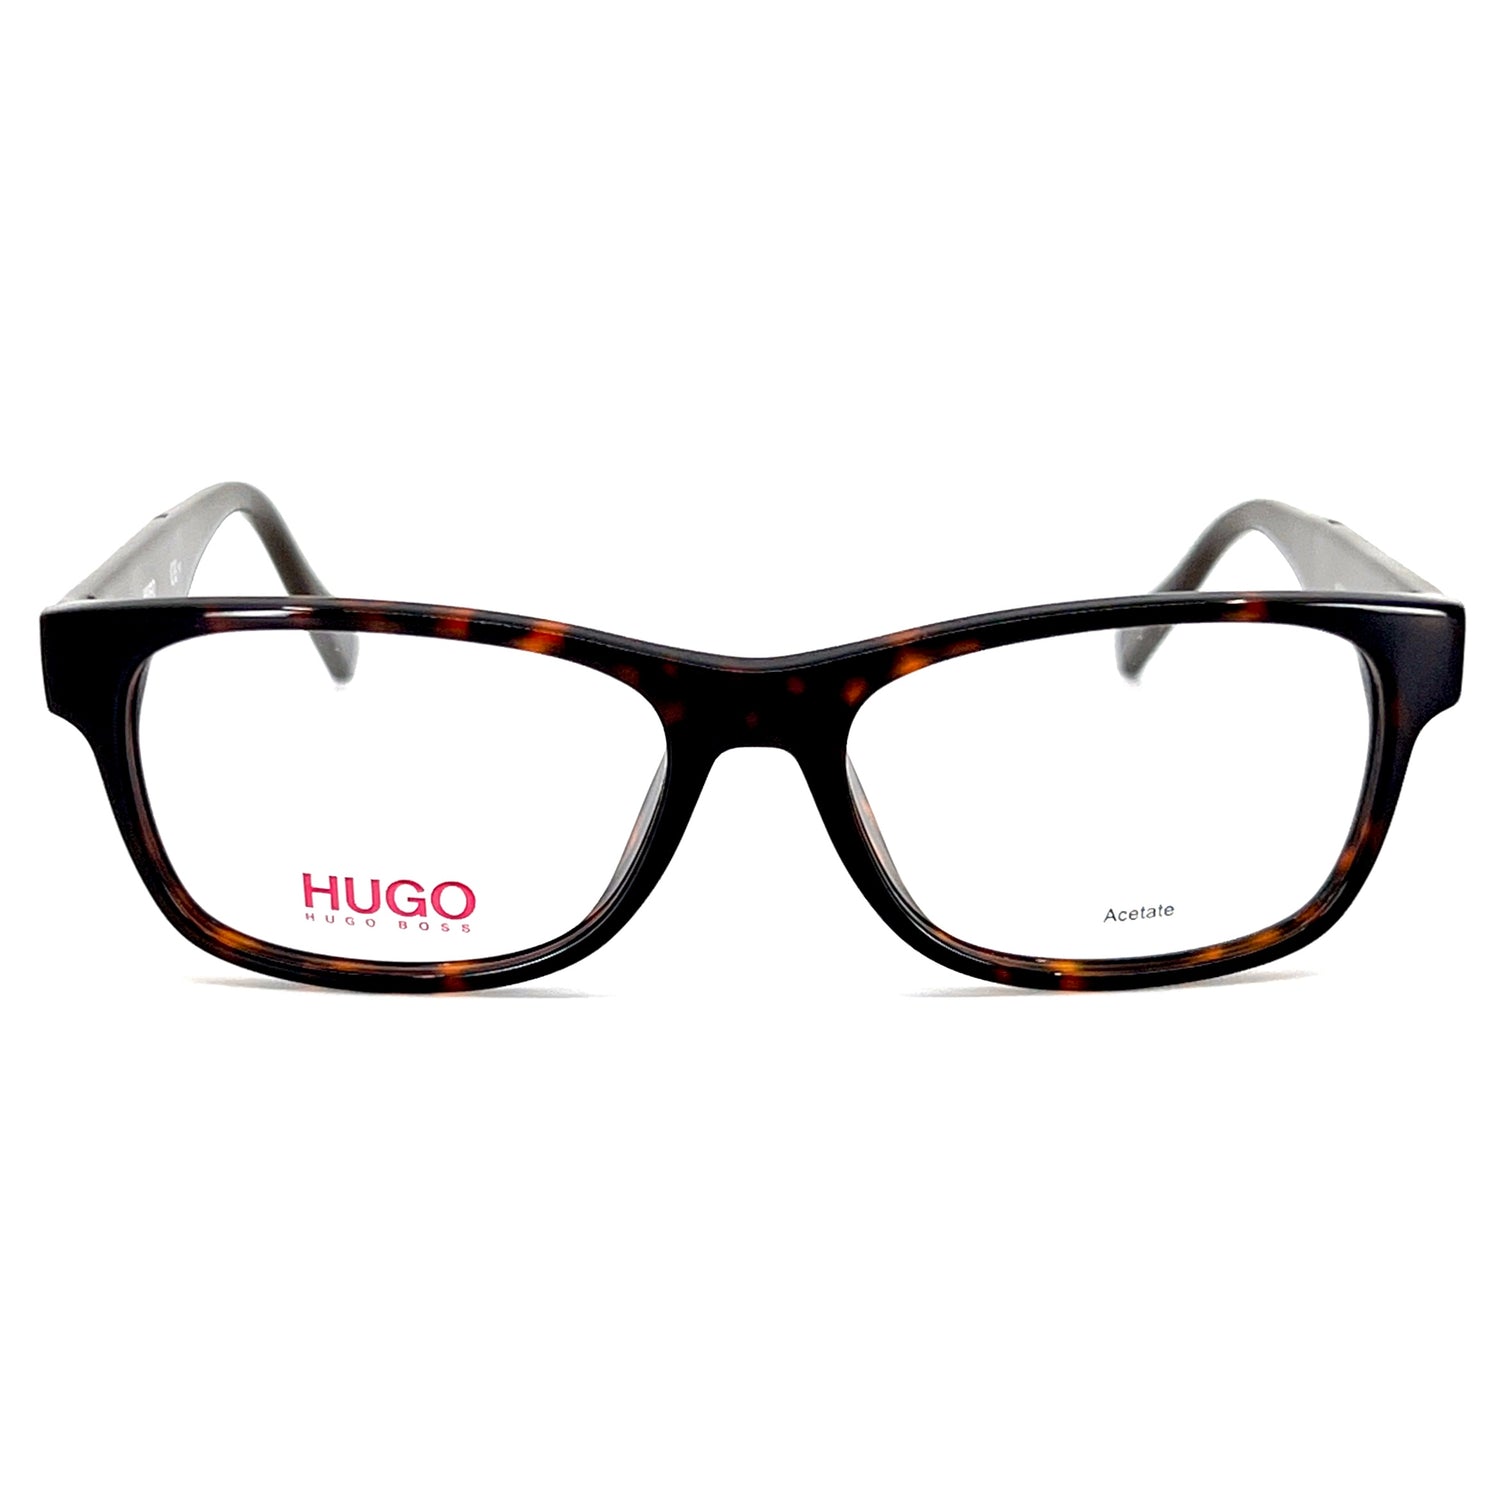 Hugo Boss Eye Frames